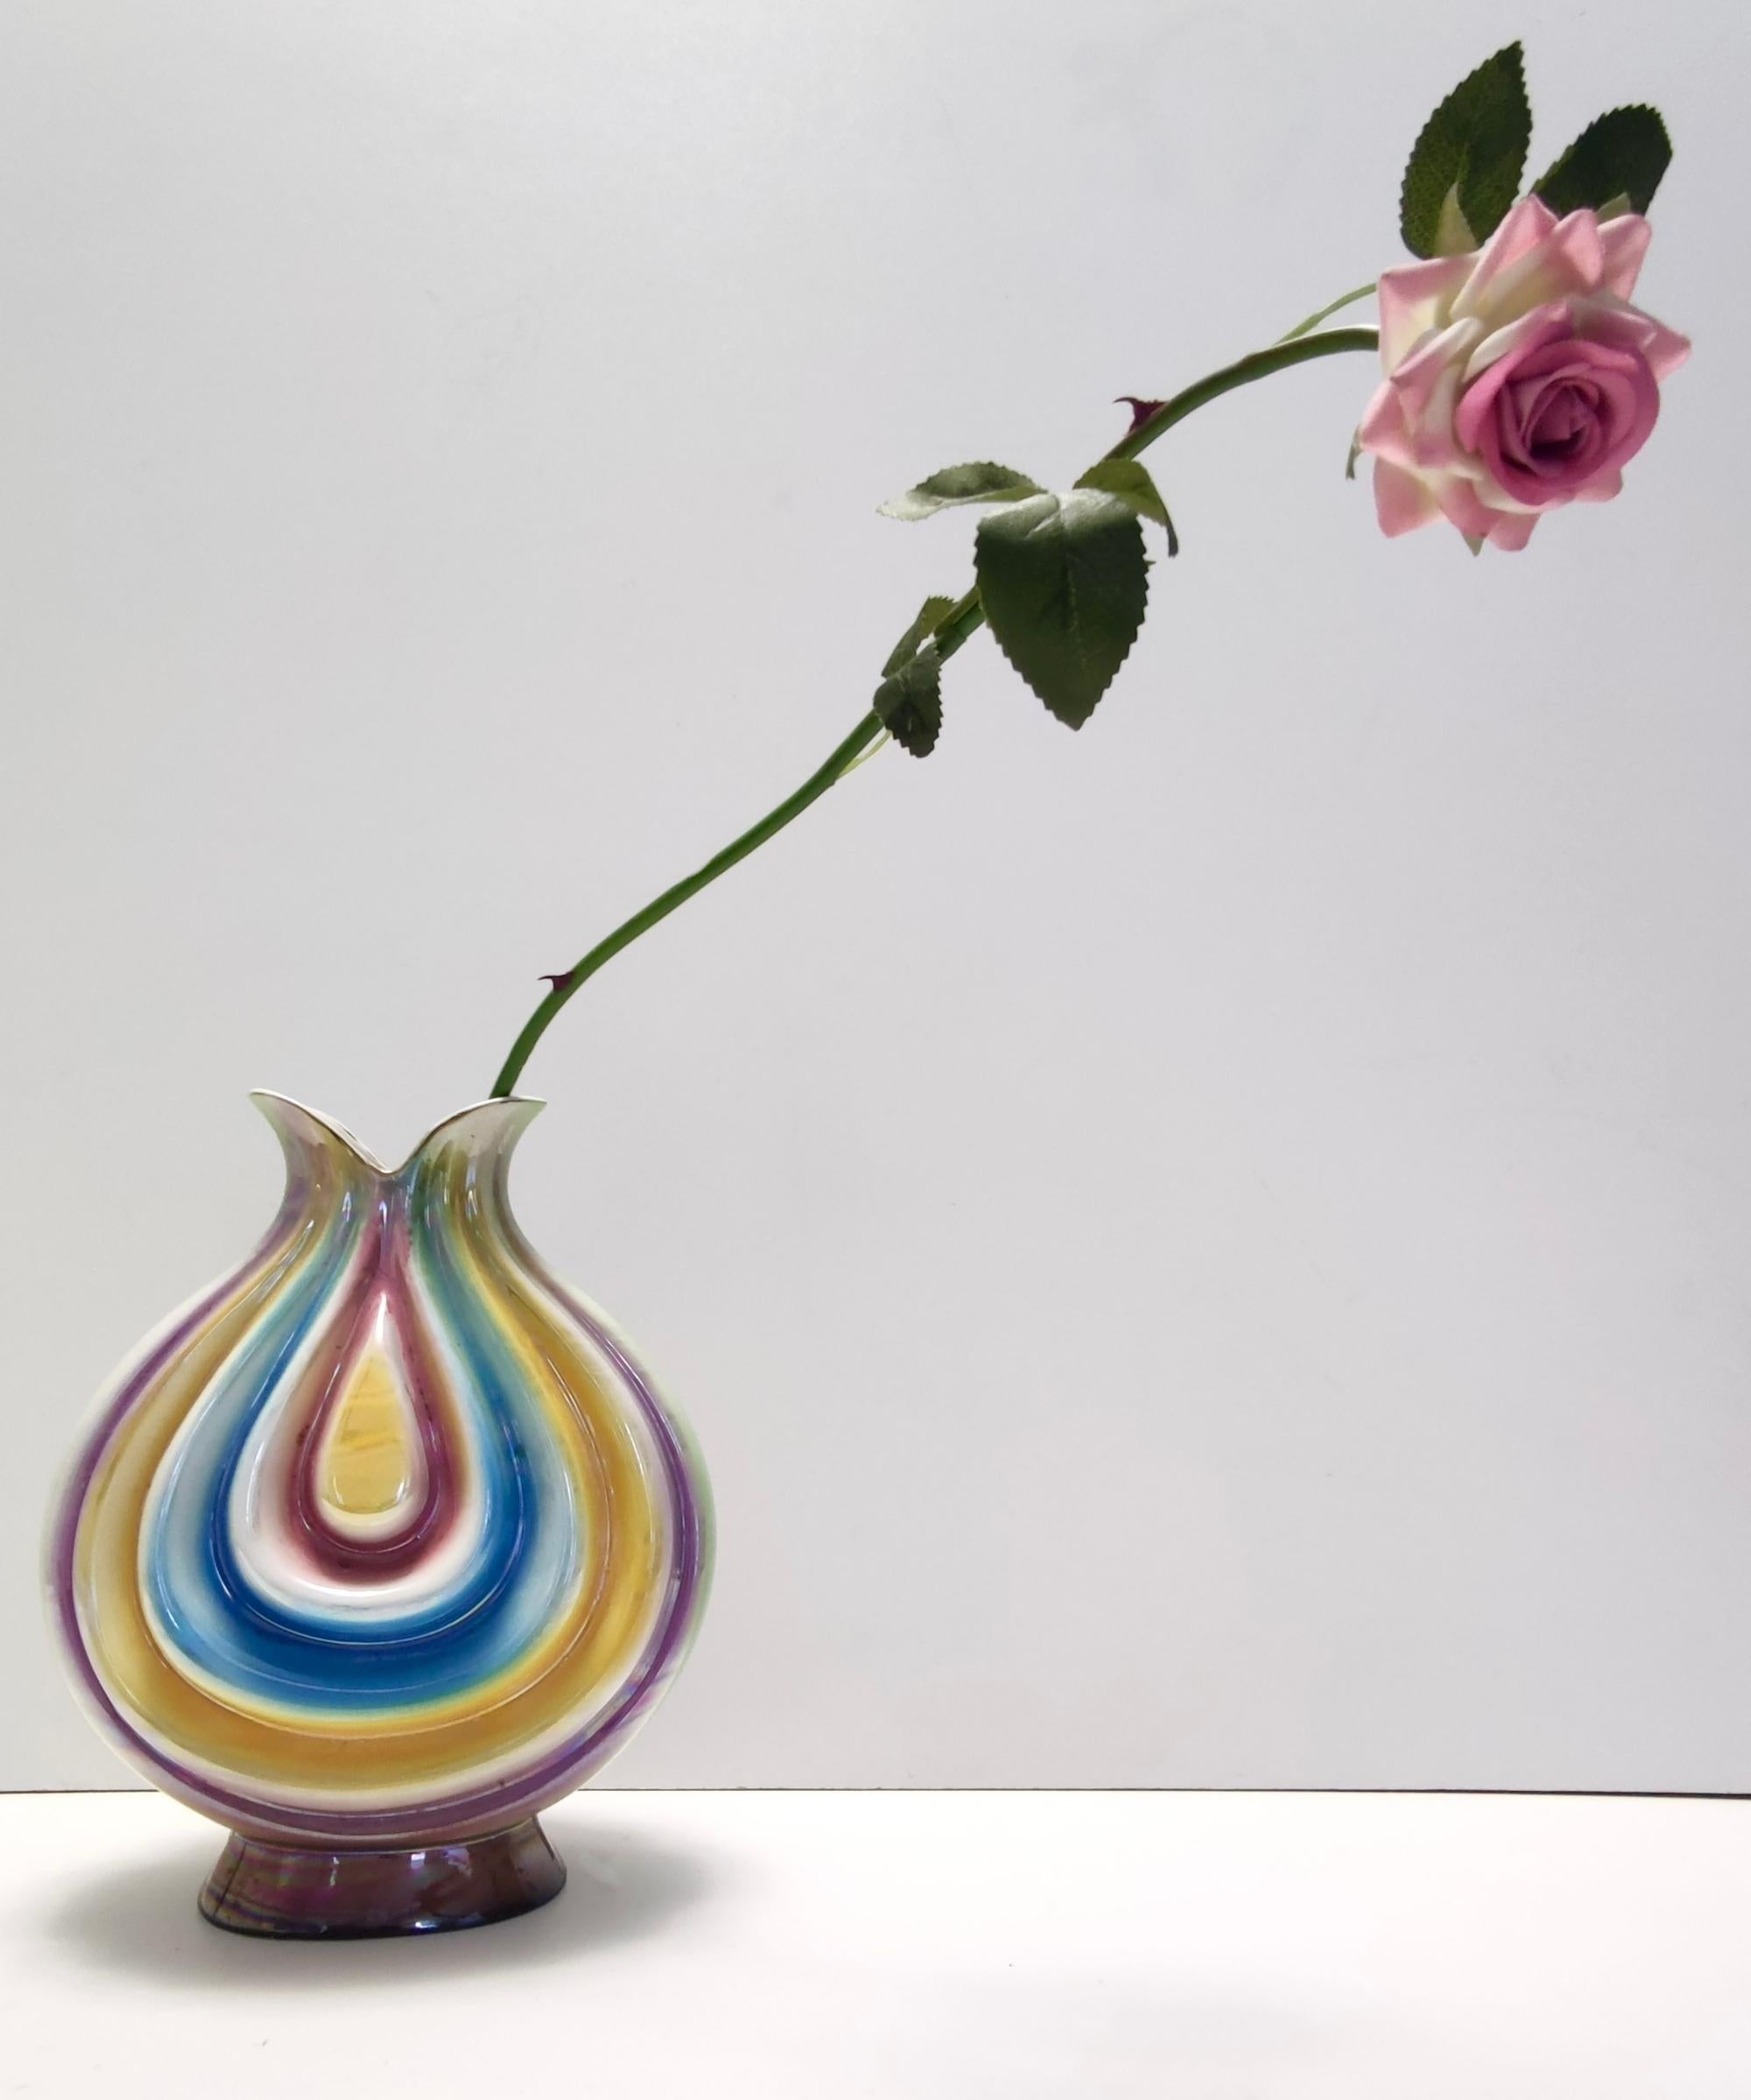 Fabriqué en Italie, Sesto Fiorentino, années 1950.
Il est réalisé en céramique laquée avec des couleurs irisées.
Ce vase est un article vintage, il peut donc présenter de légères traces d'utilisation, mais il peut être considéré comme étant en